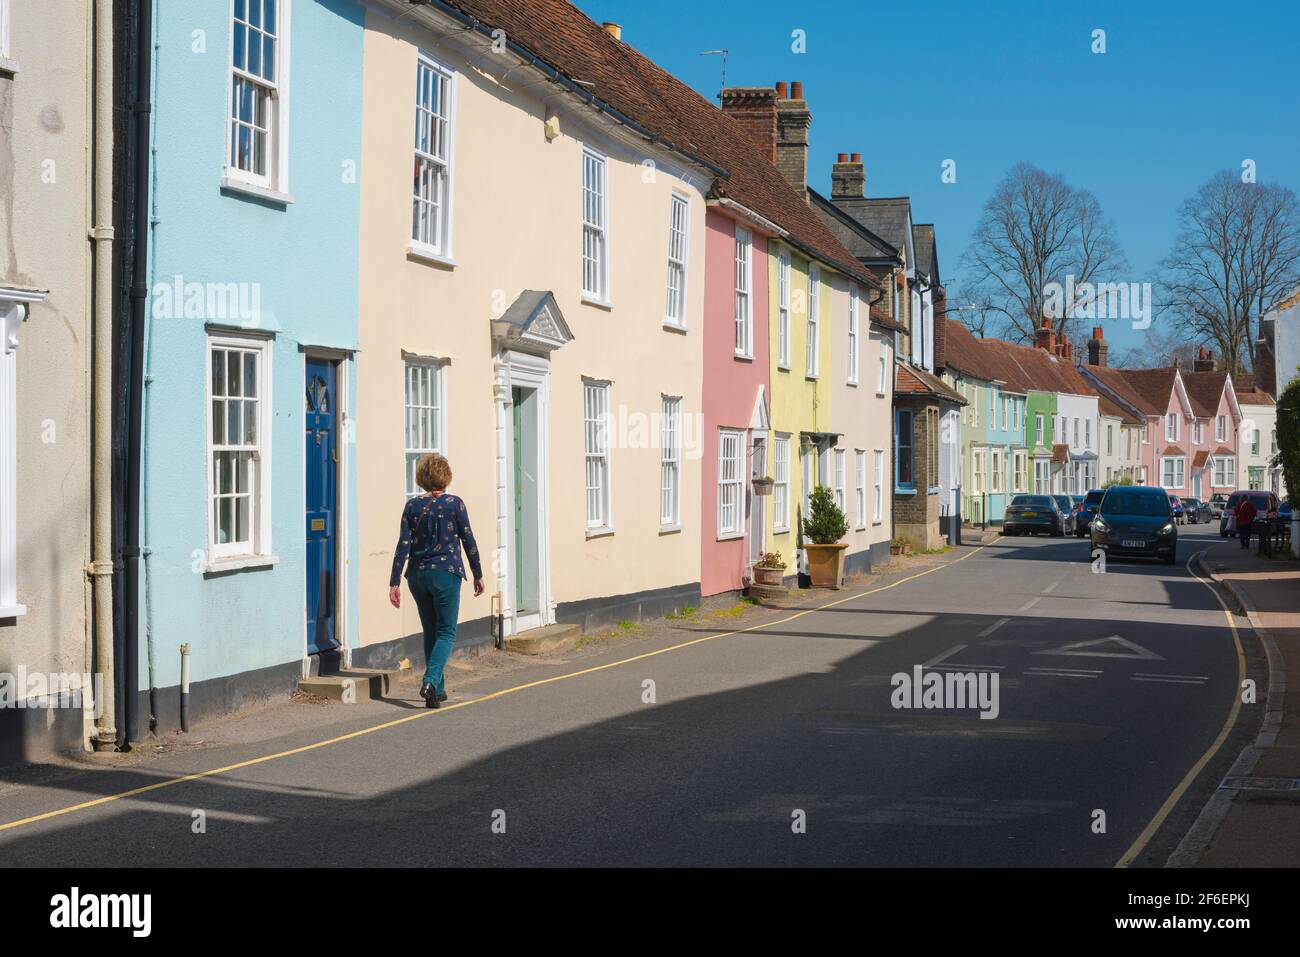 Strada tradizionale UK, vista posteriore di una donna che cammina lungo una strada villaggio tipicamente colorato contenente proprietà d'epoca, Coggeshall, Essex. Foto Stock